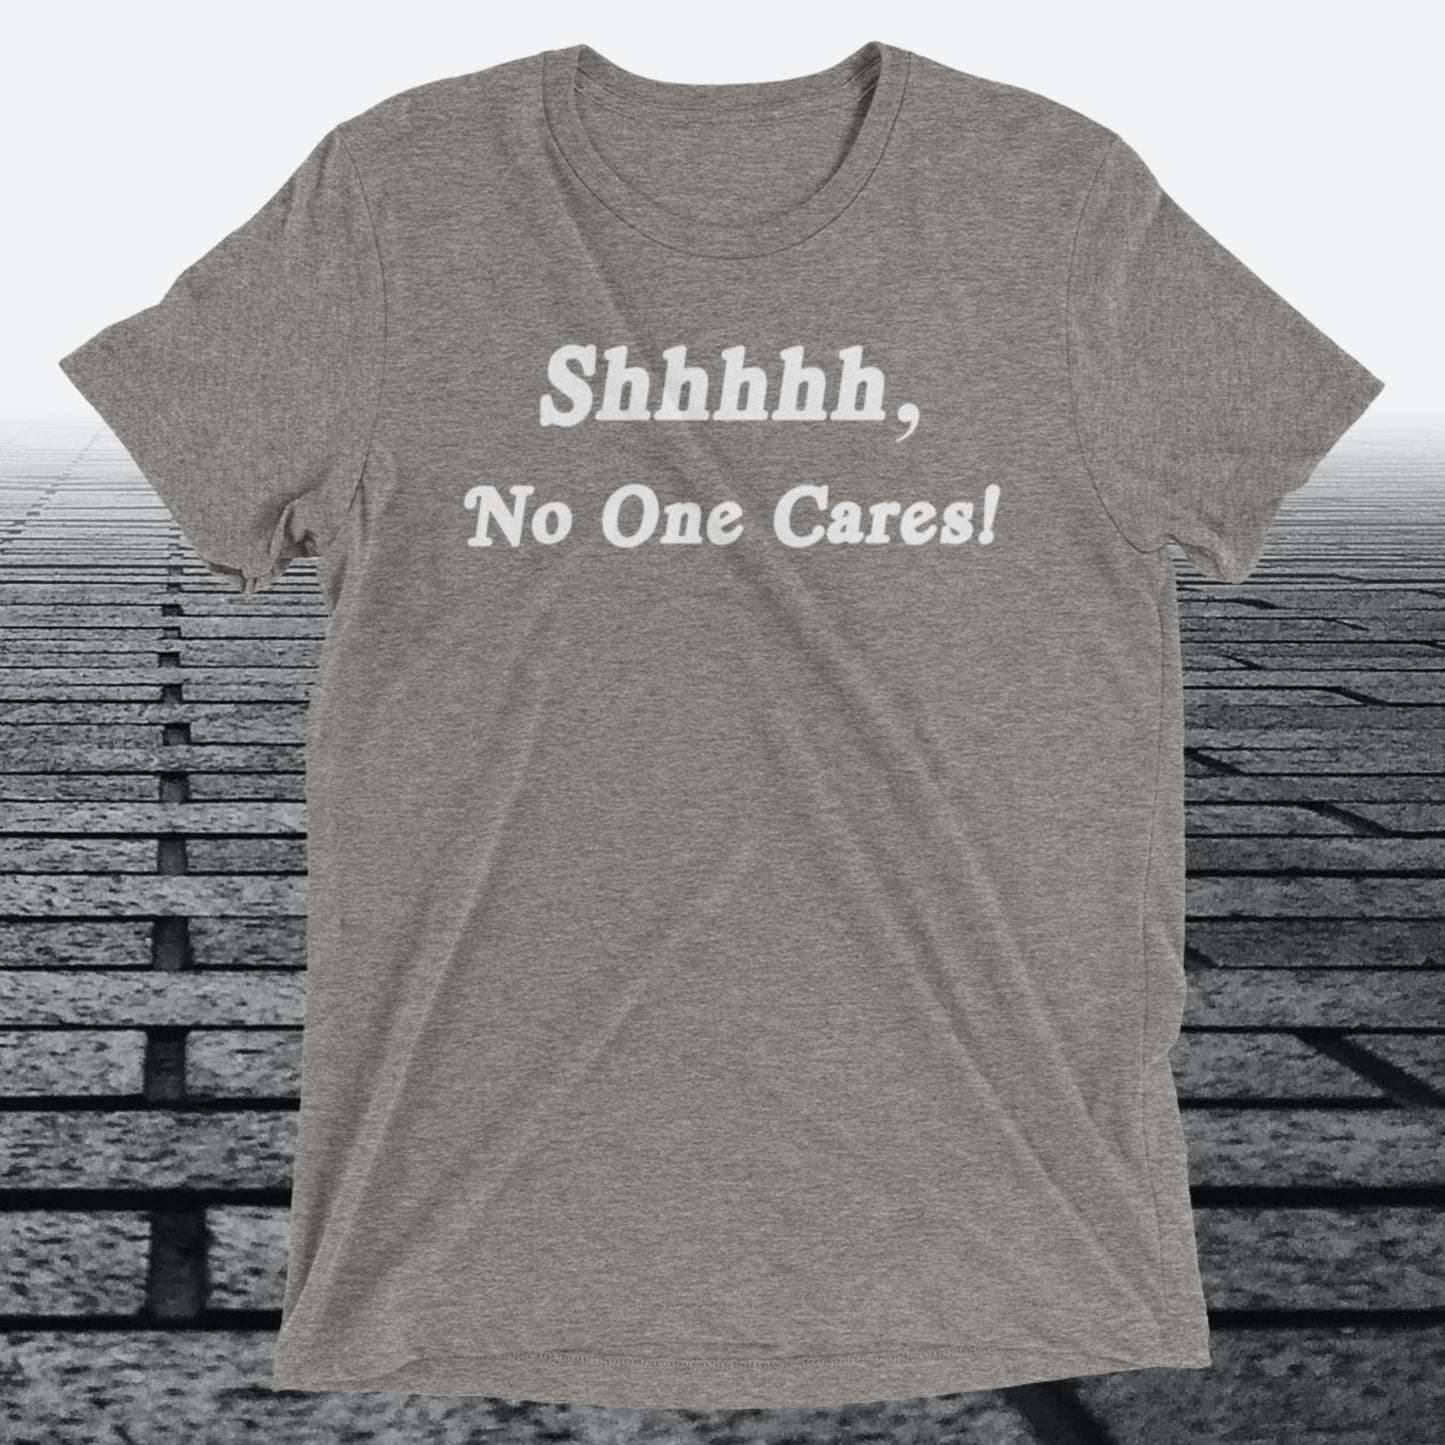 Shhhhh, No One Cares, Triblend T-shirt